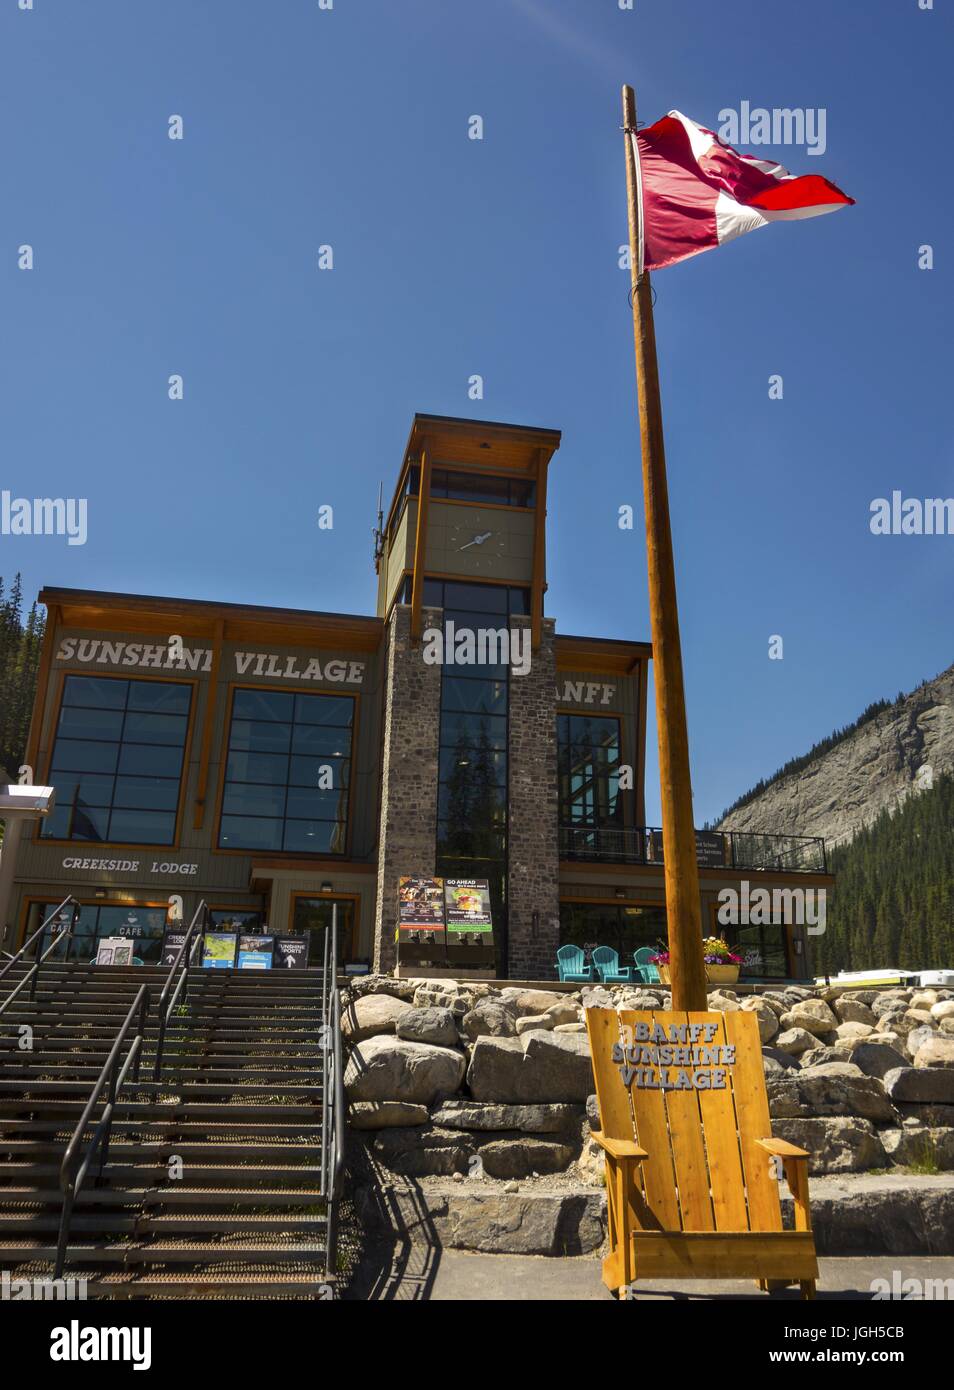 Stazione sciistica di Sunshine Village, stazione sciistica di Rocky Mountain e facciata del Visitor Center Lodge in estate. Banff National Park, Alberta, Canada Foto Stock